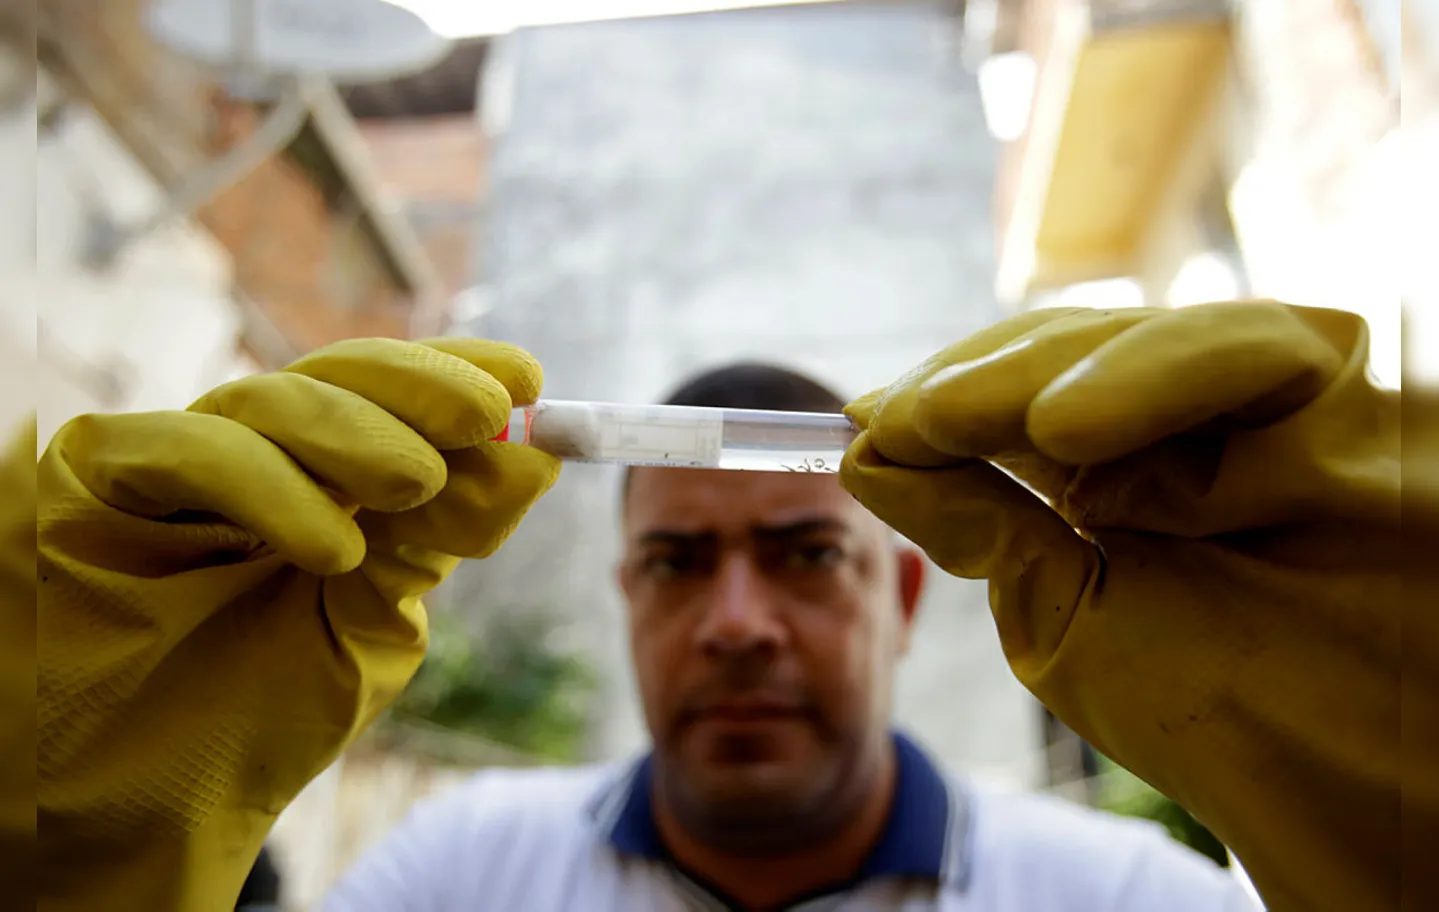 Agentes de combate a endemias investigam um possível surto de dengue, zika ou chikungunya | Foto: Joá Souza | Ag. A TARDE